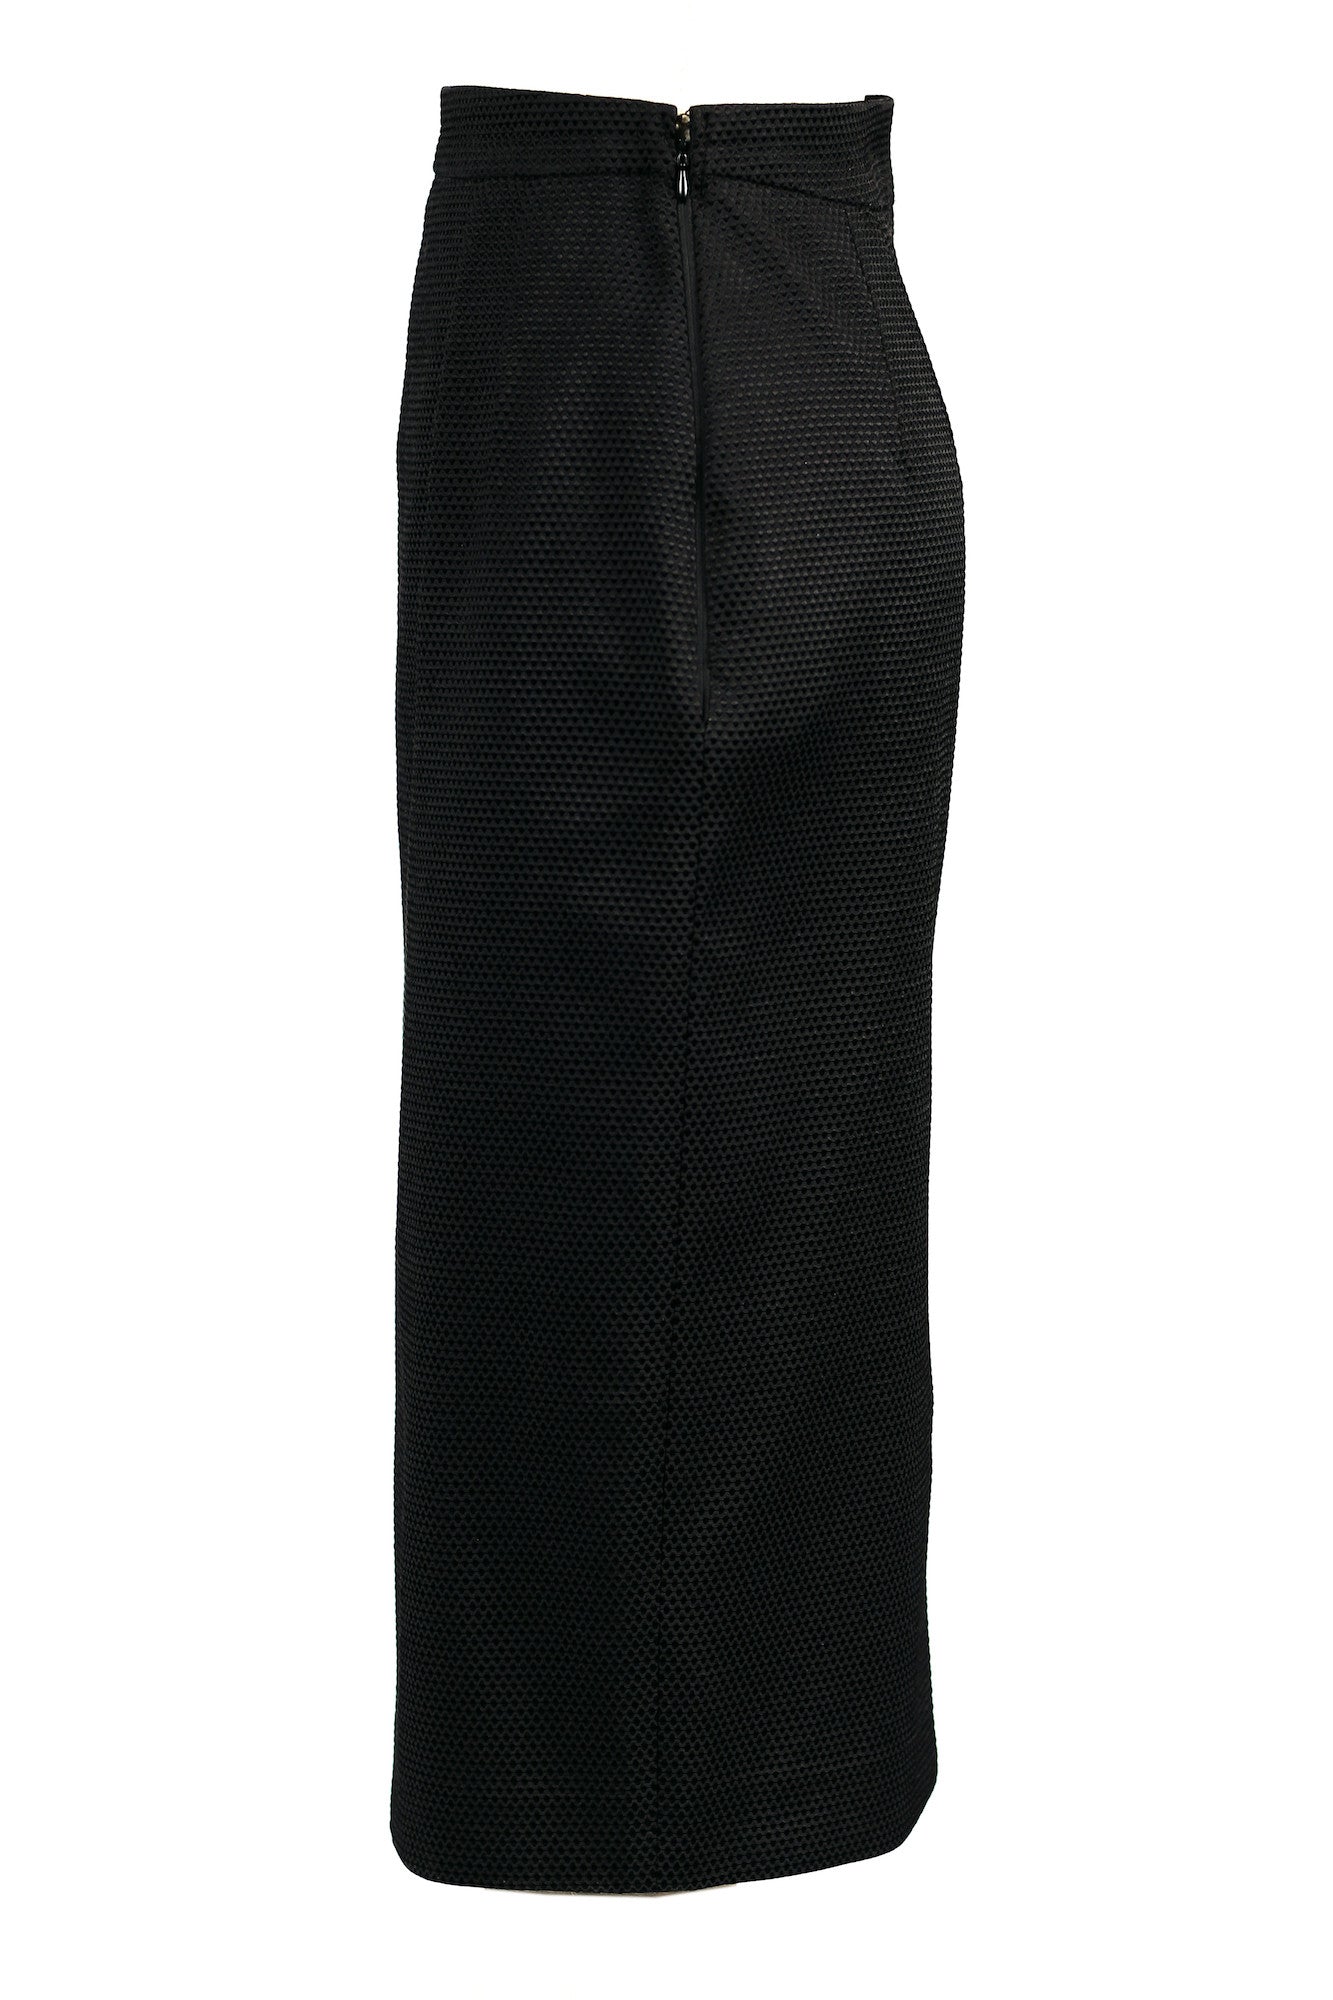 Textured High-waisted Pencil Skirt for All Seasons - Steve Guthrie - 6